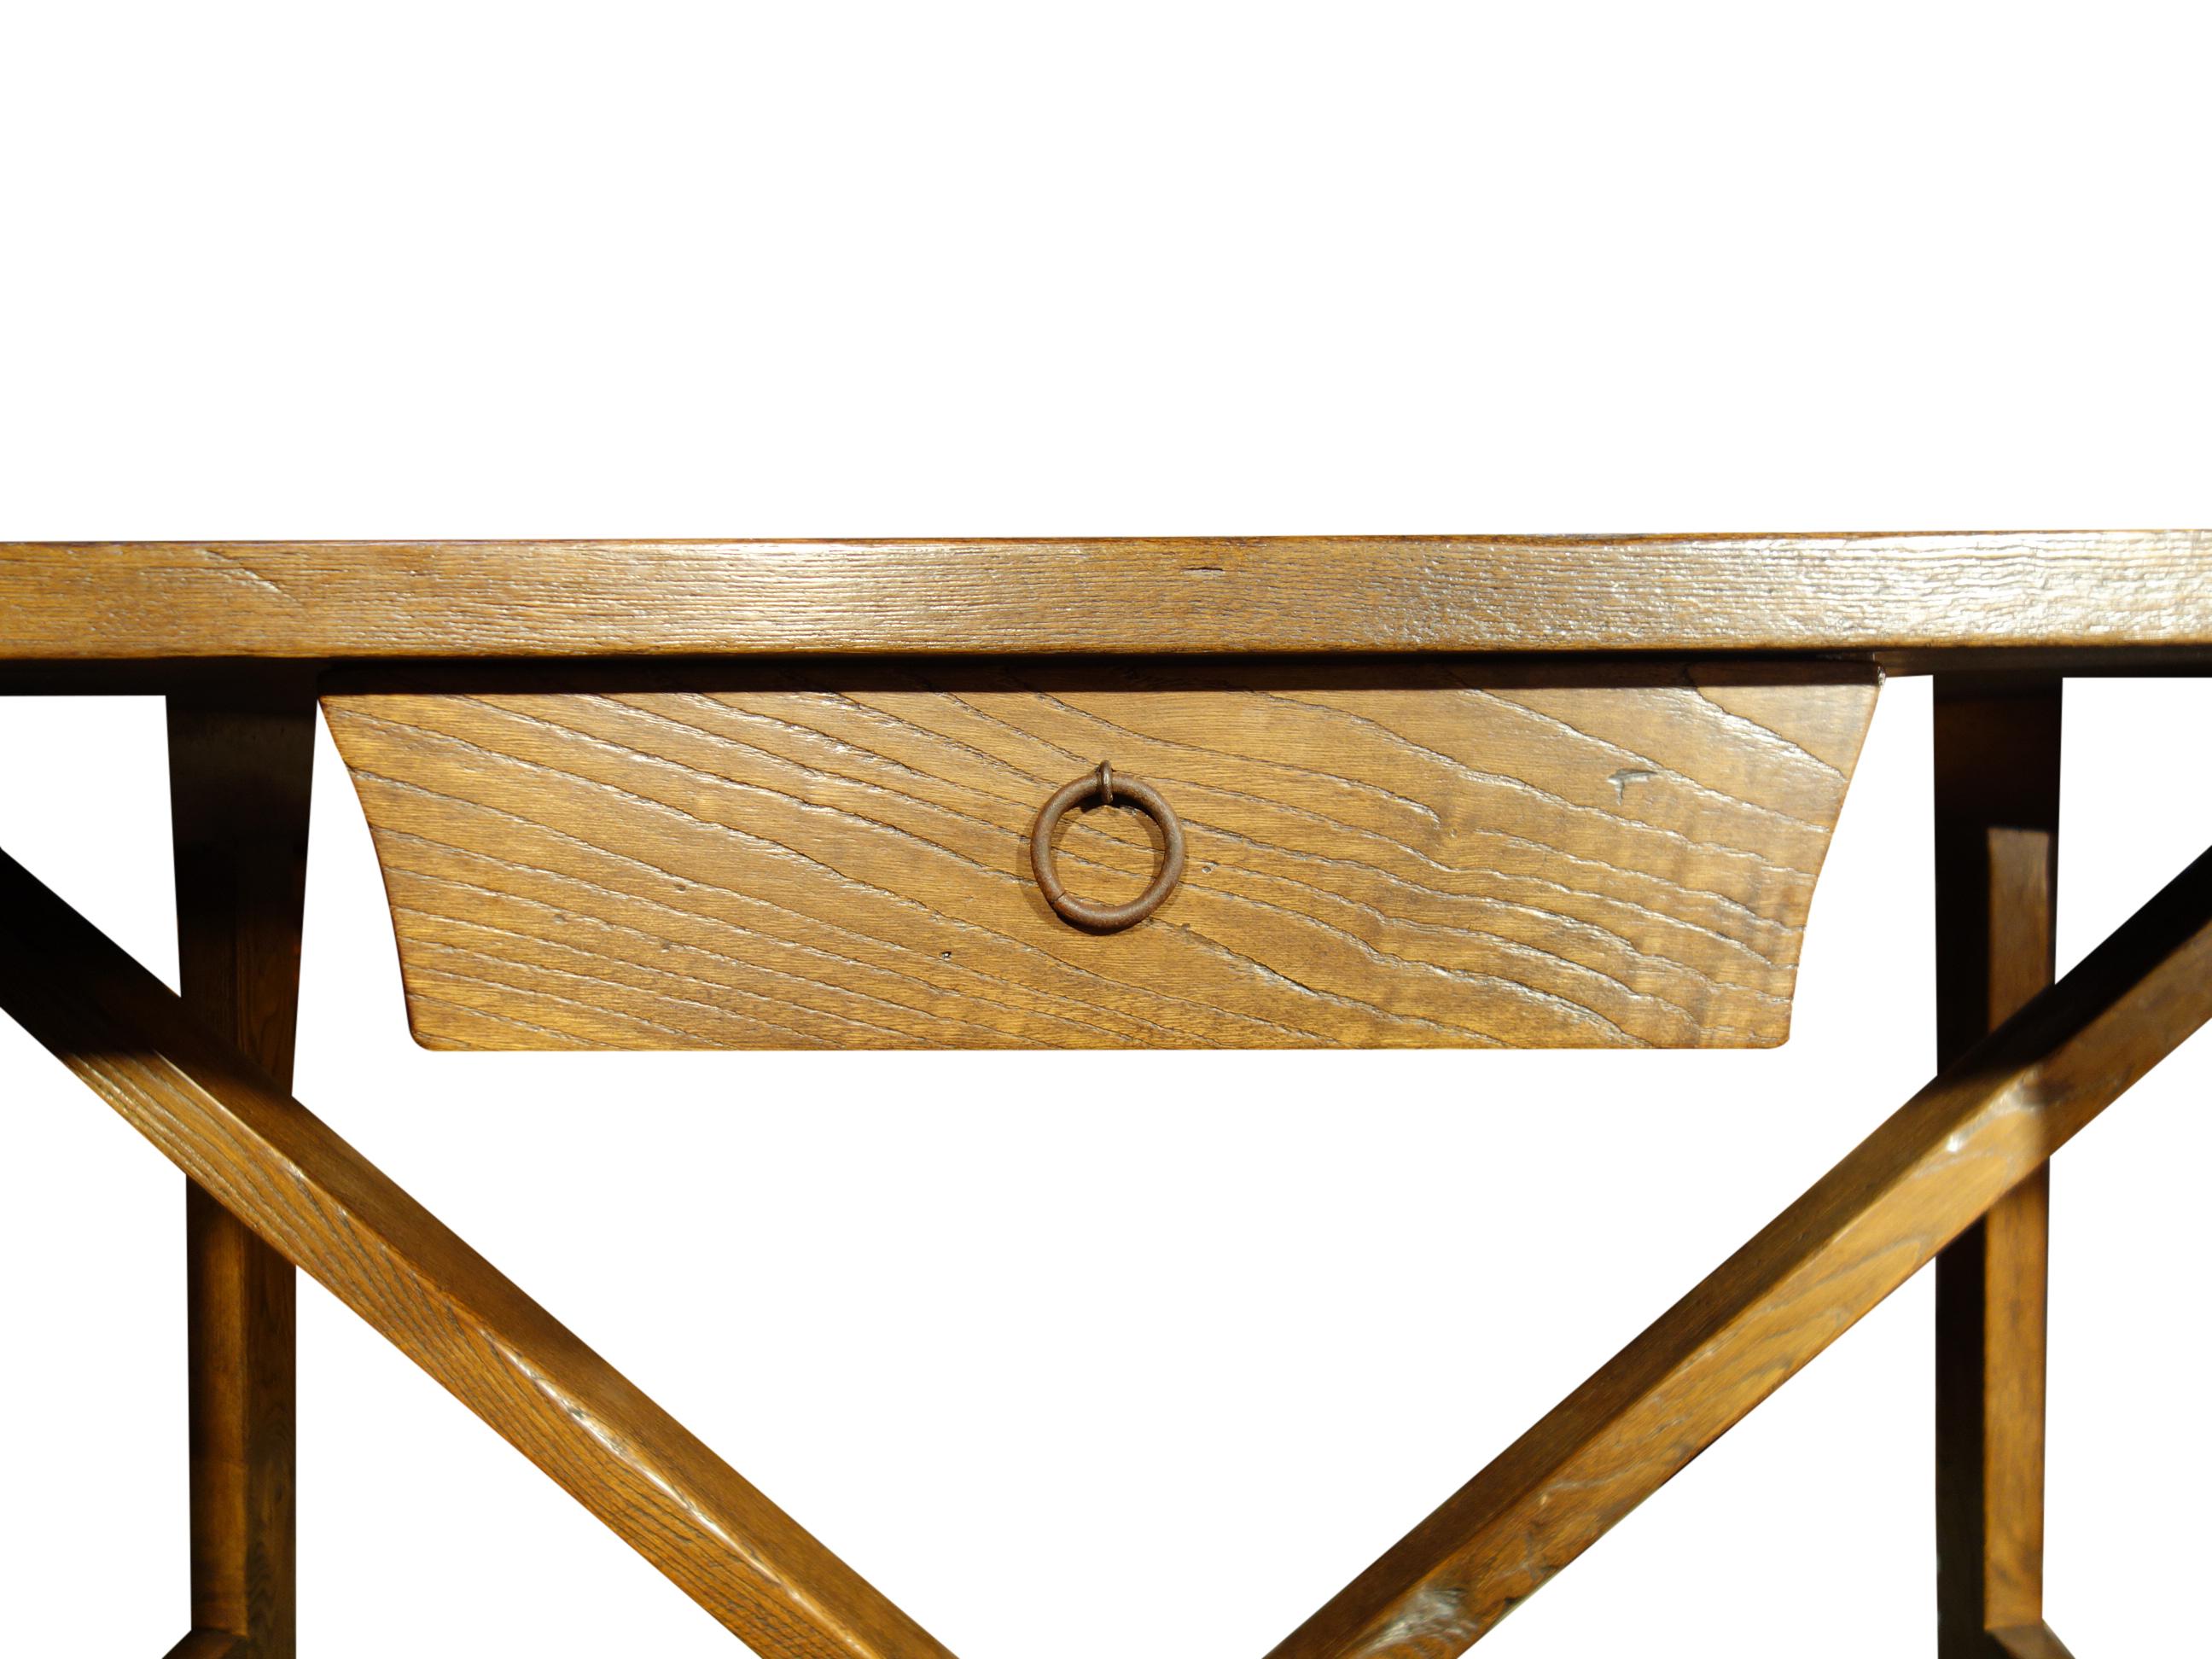 Ligne de table CAPRETTA - notre table rustique de style réfectoire italien du 17e siècle avec tiroir, fabriquée à la main en vieux châtaignier avec une surface lisse et brossée pour accentuer le grain et une laque Renaissance classique - disponible